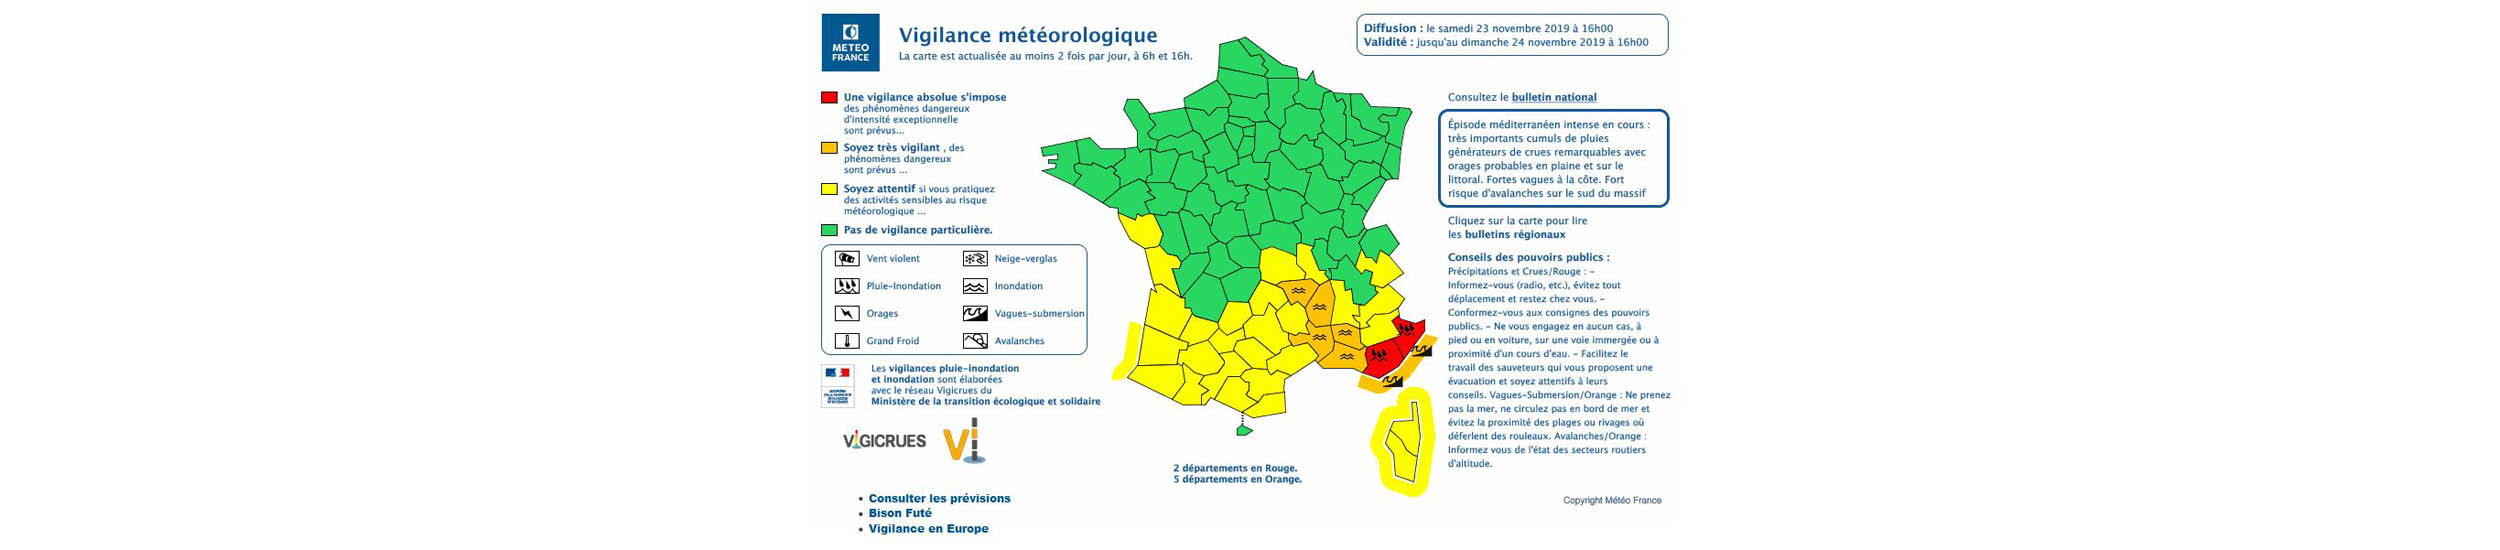 Vigilance orange dans le sud-est de la France – Attention